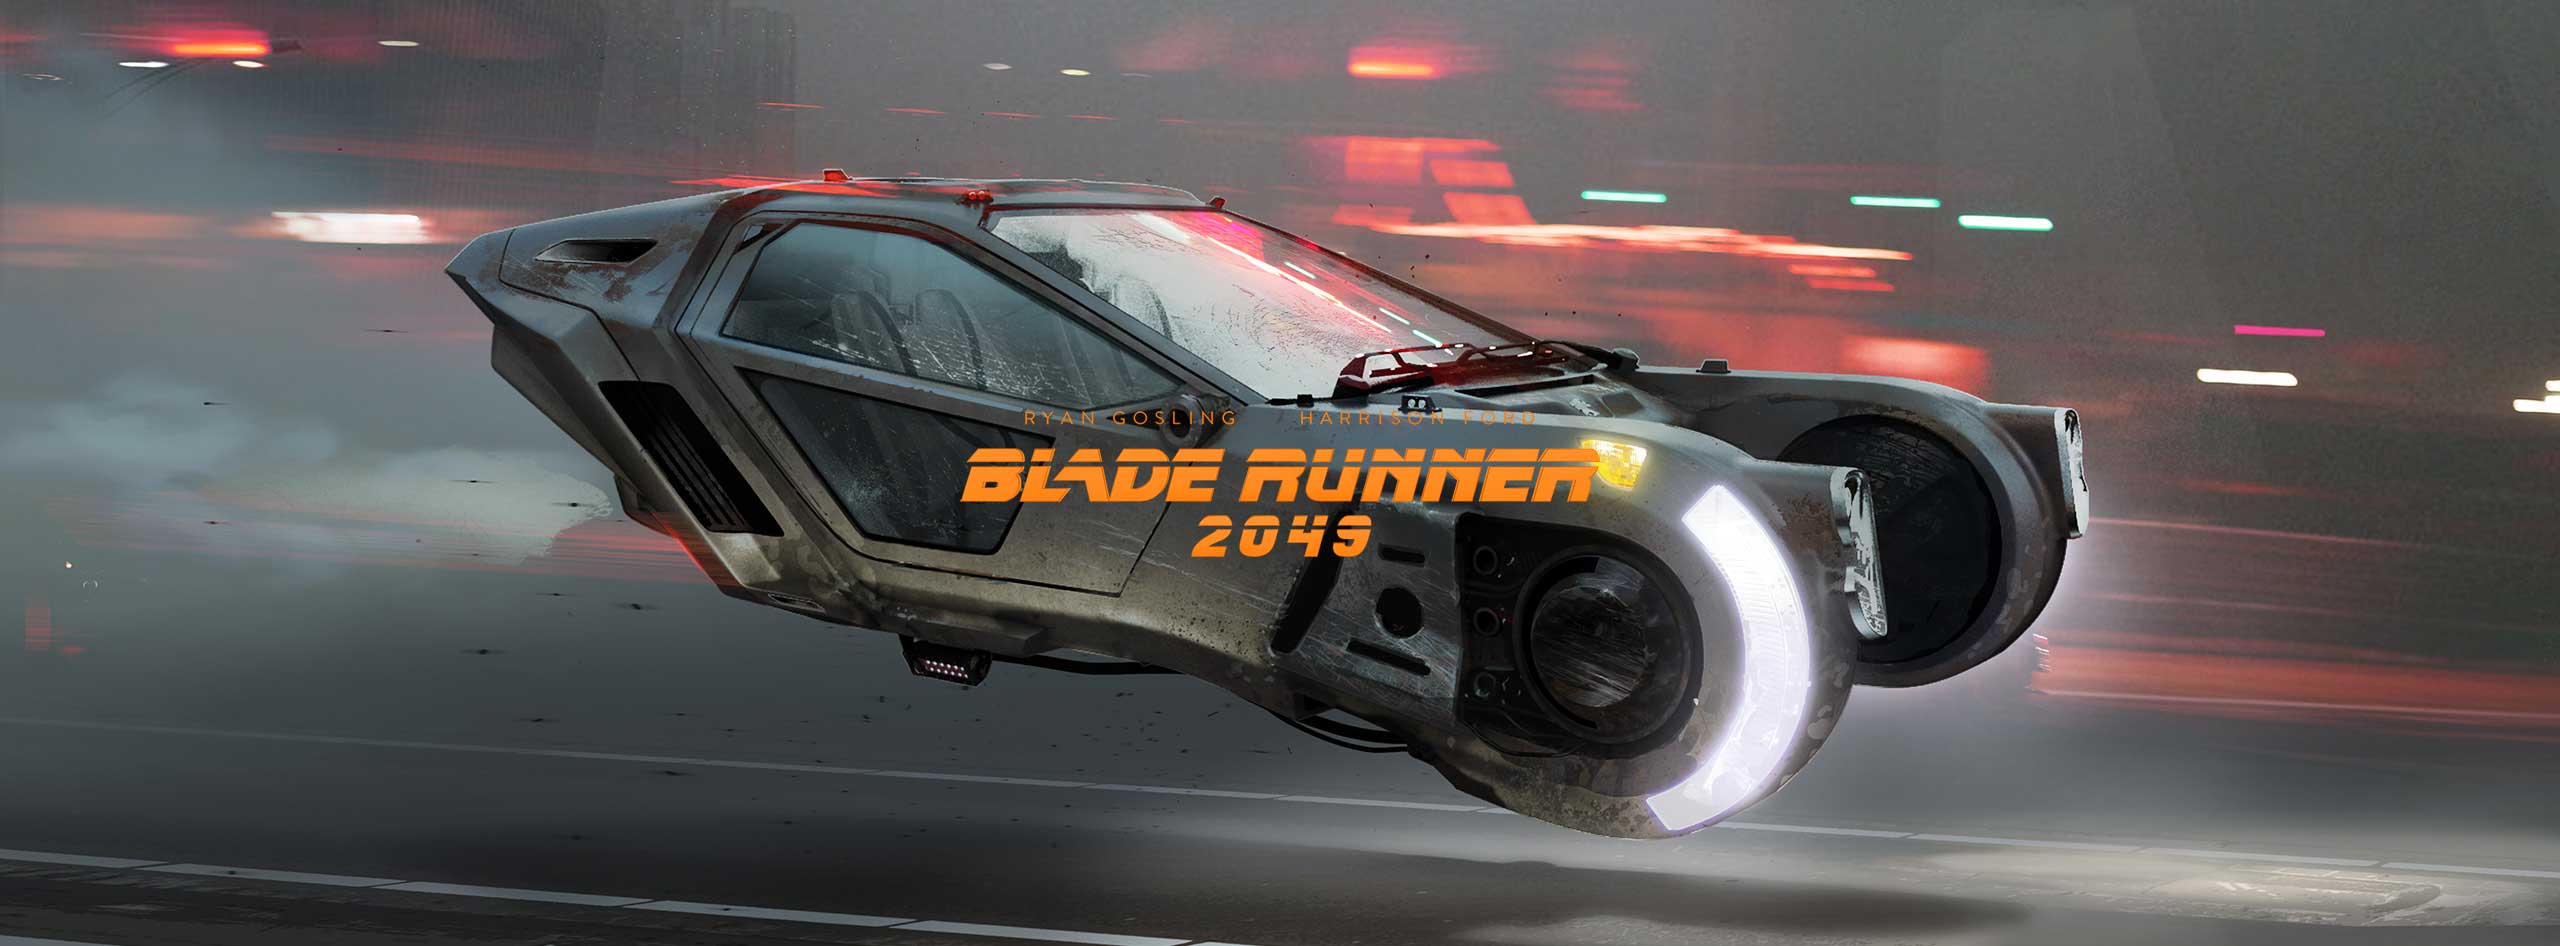 Blade Runner 2049 K'S Spinner